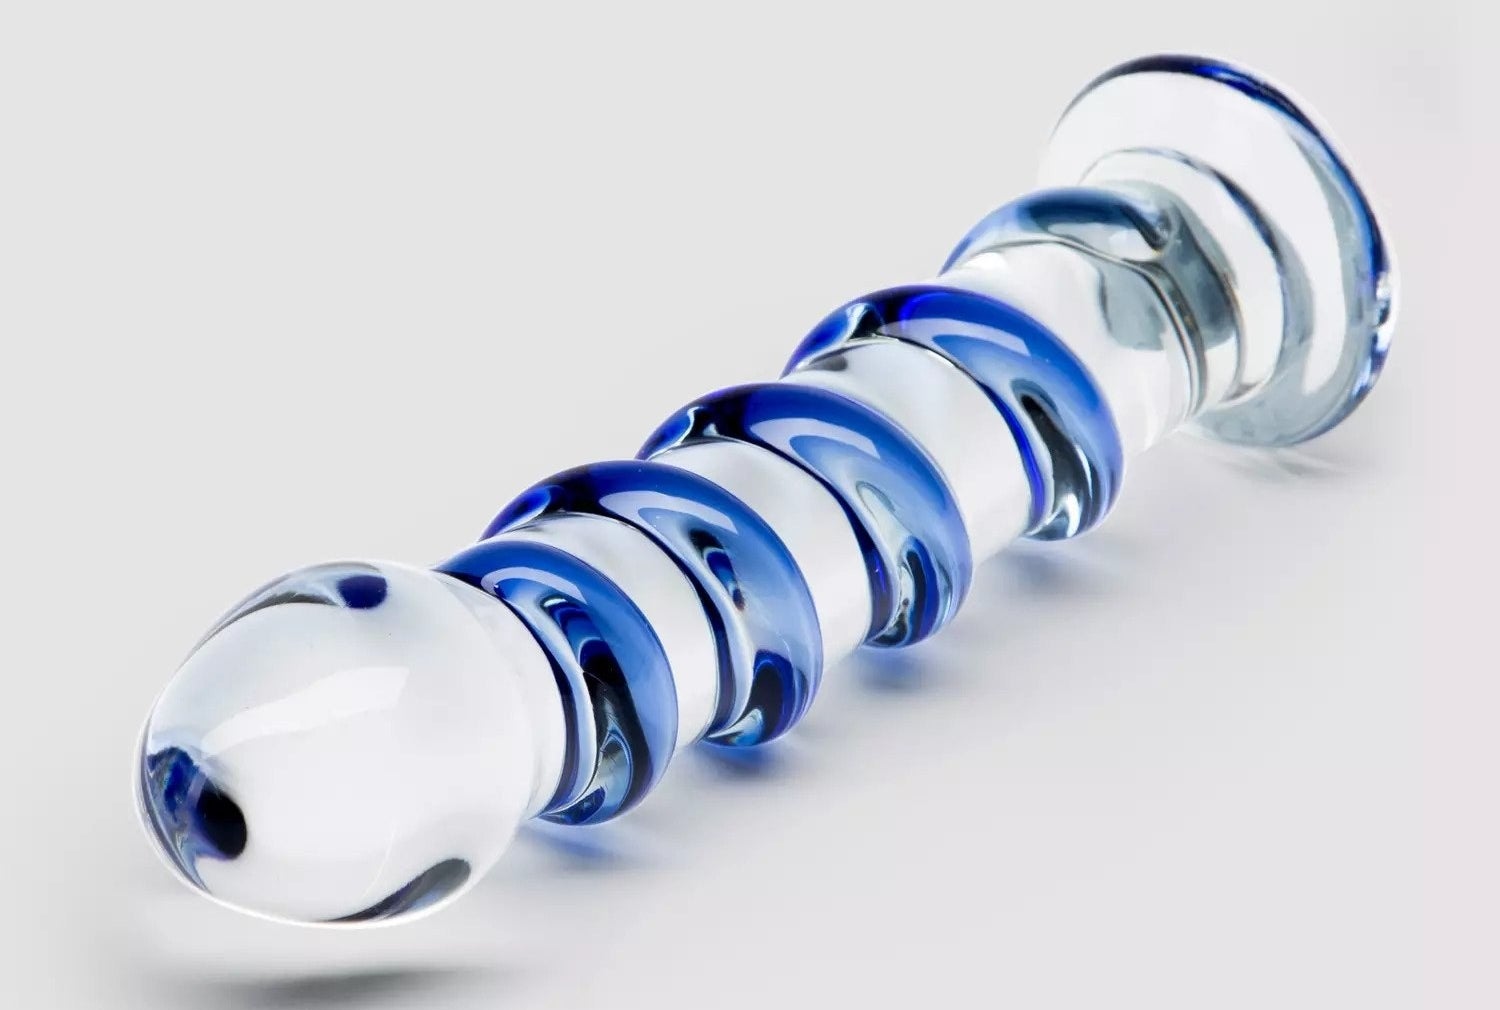 Transparent dildo with blue spiral